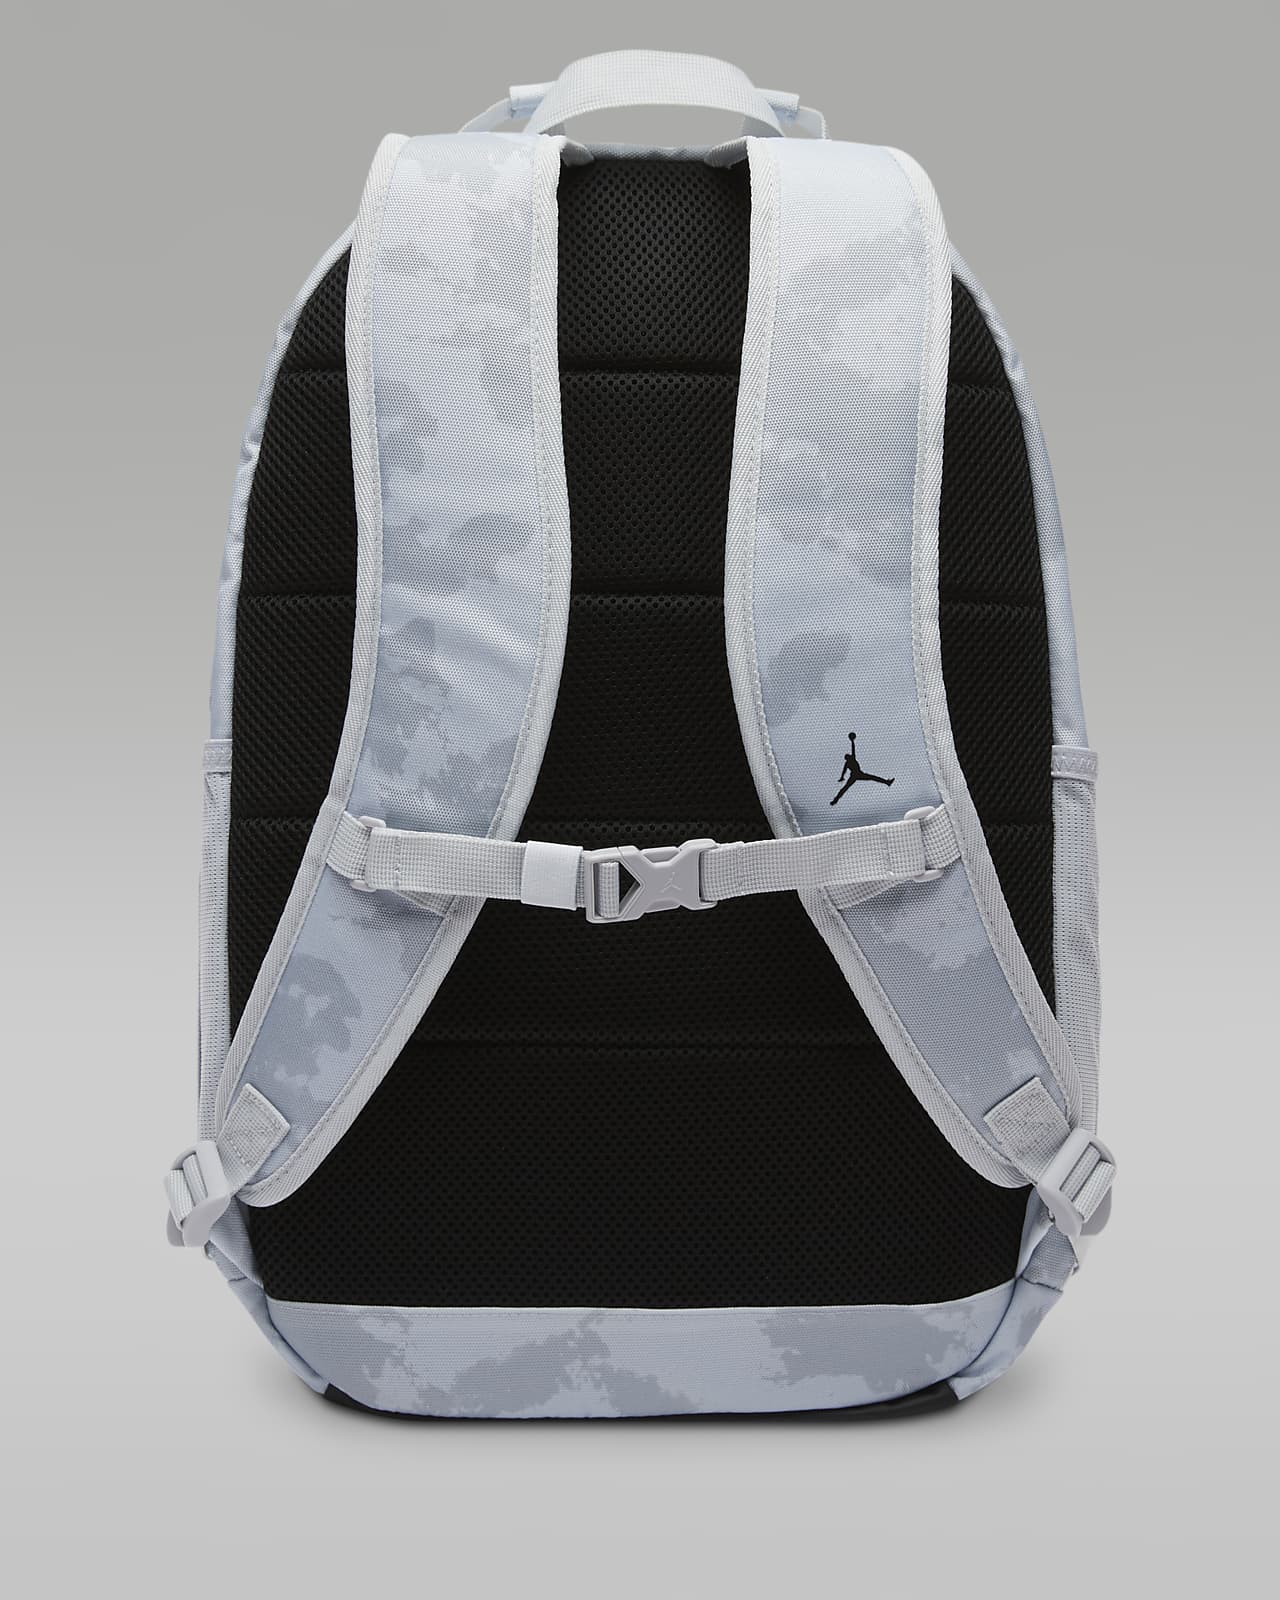 Mochila Jordan Sport Backpack